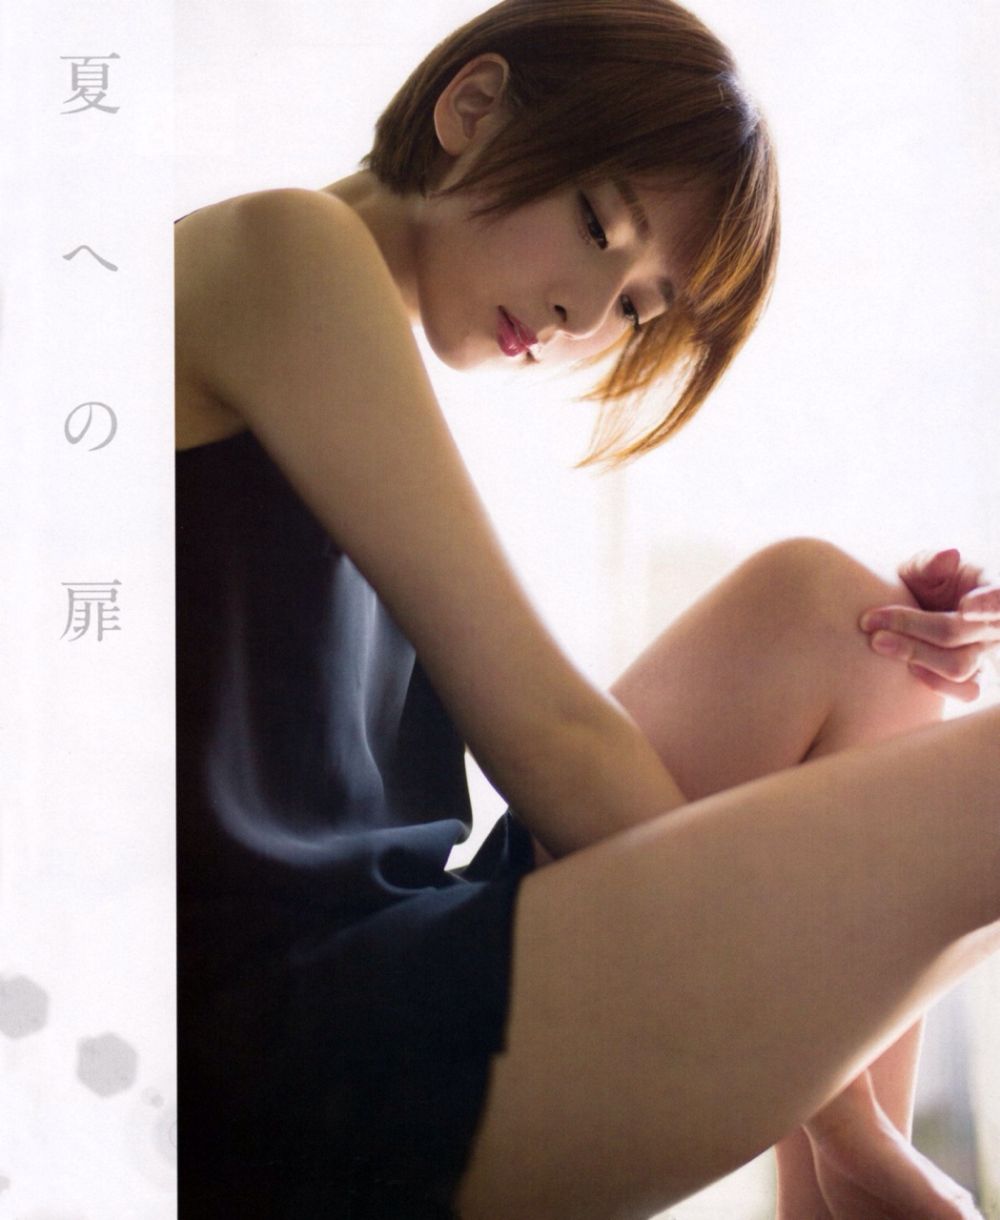 Nanami Hashimoto Sexy and Hottest Photos , Latest Pics